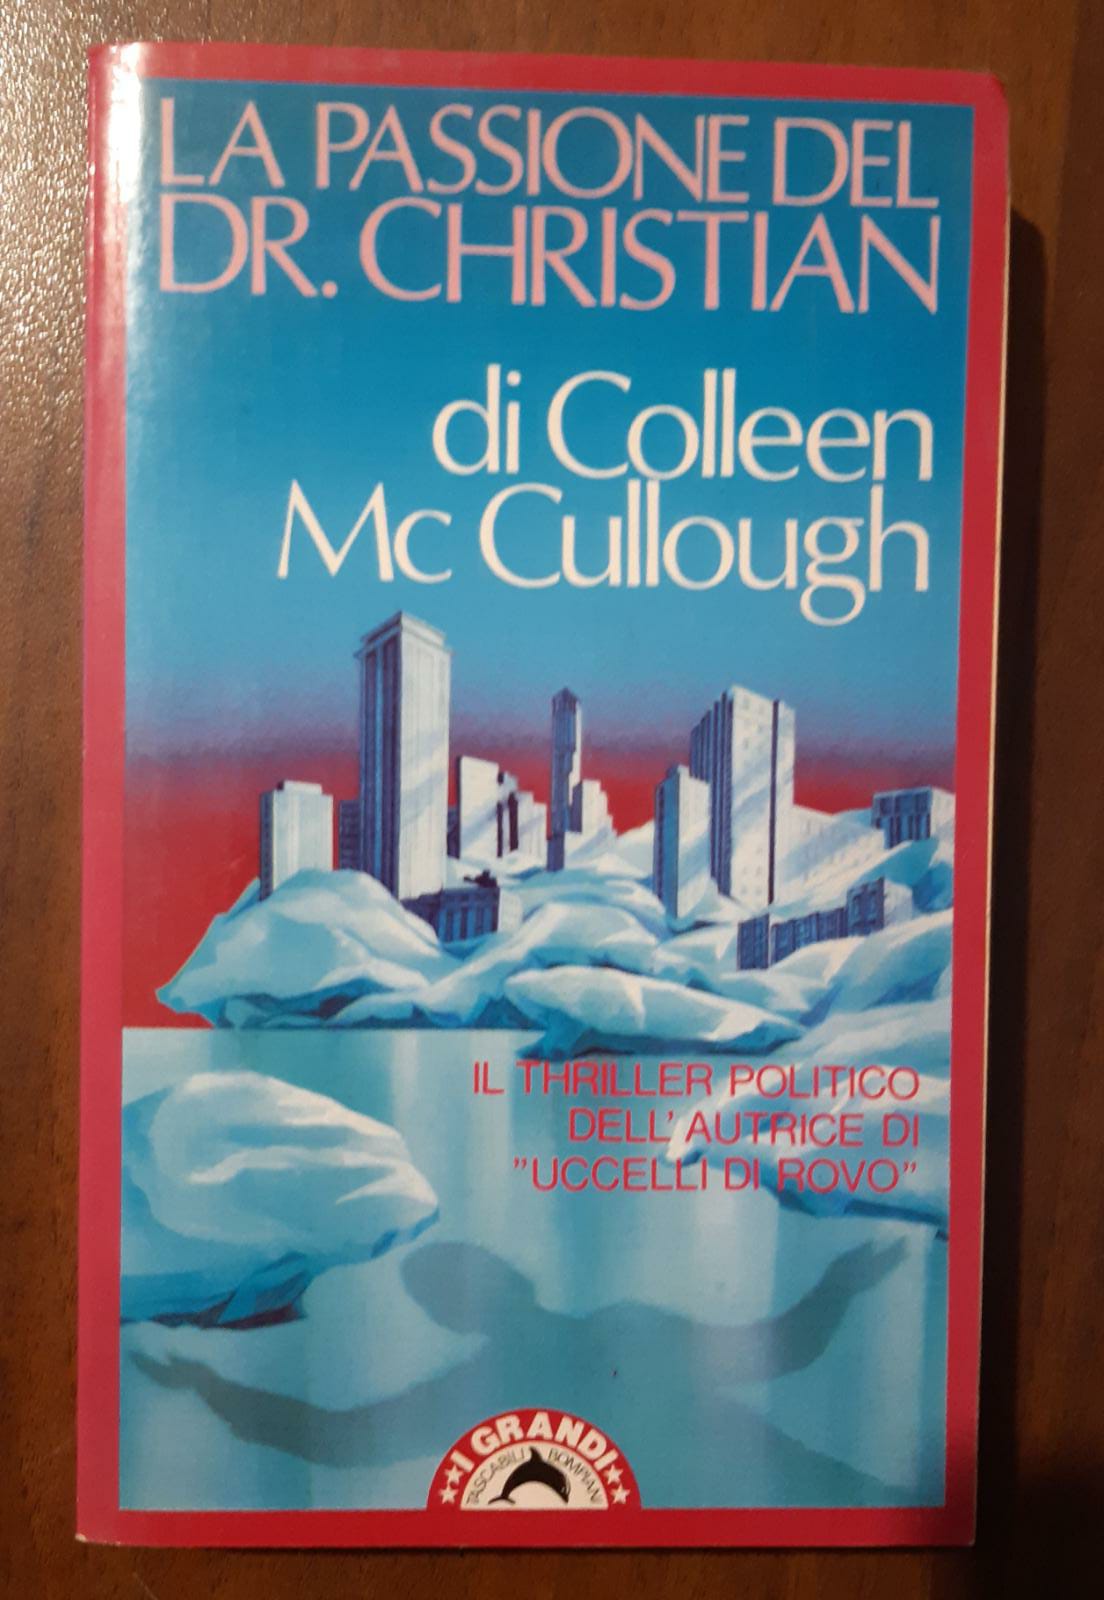 La passione del dr. Christian - Colleen McCullough